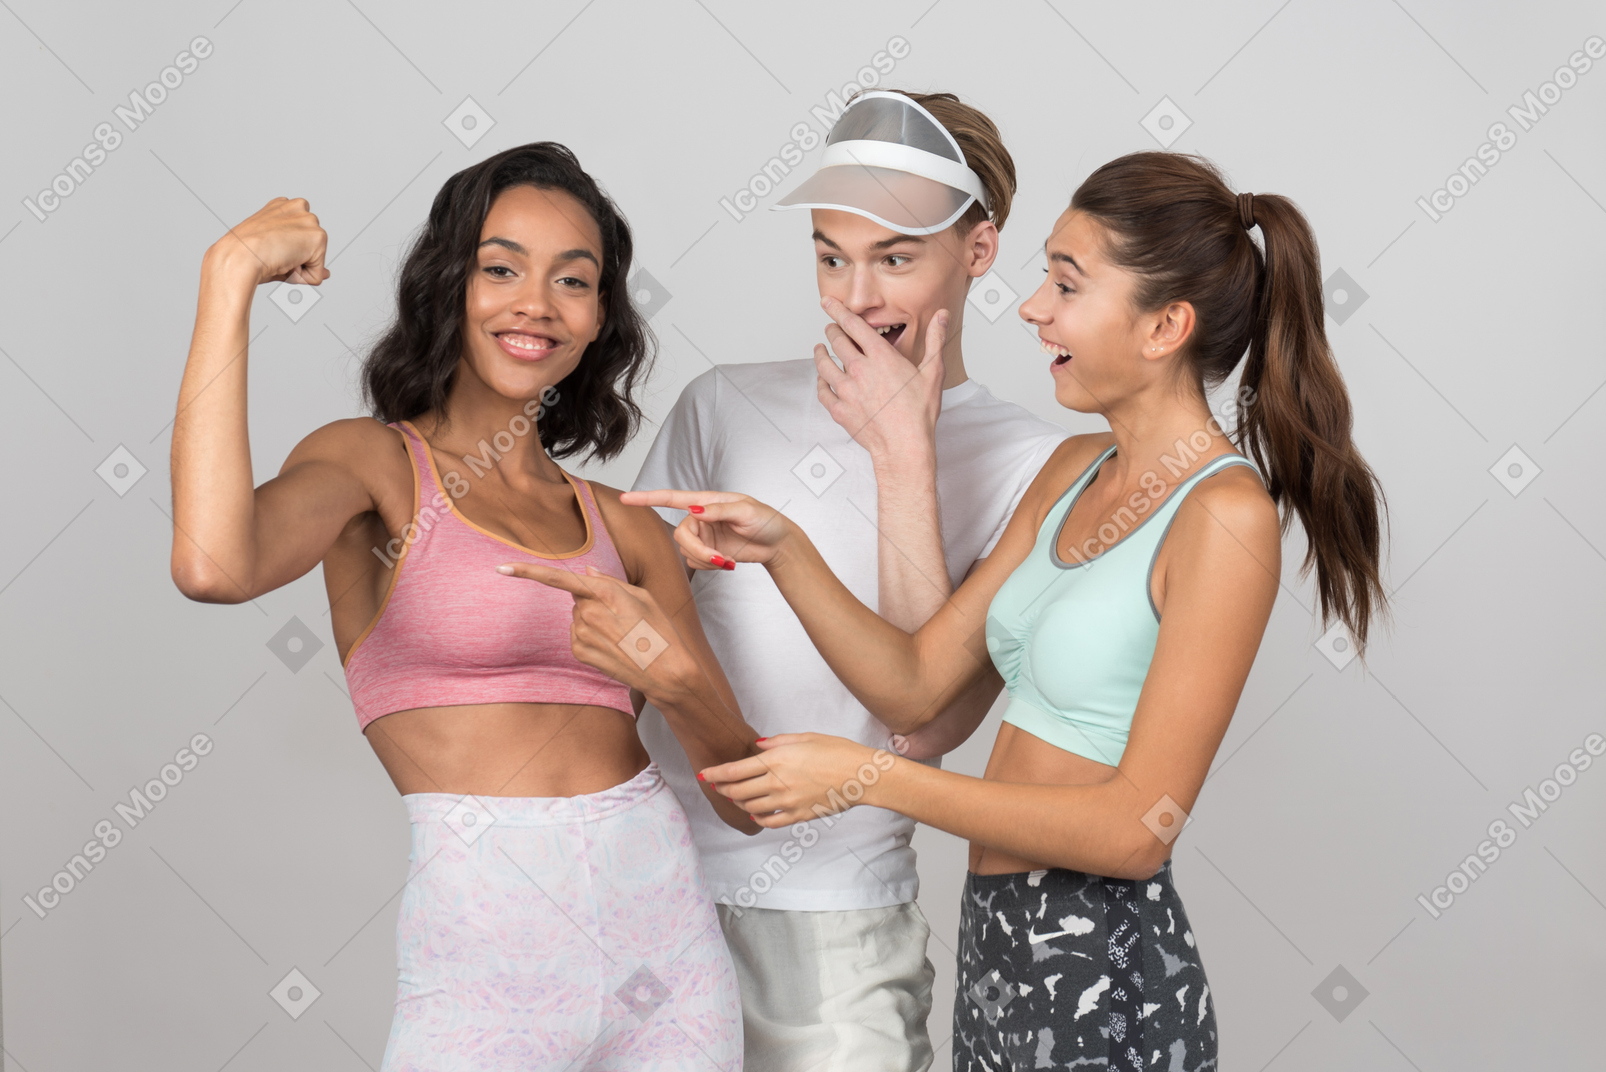 Chica y chico revisando el músculo de un amigo